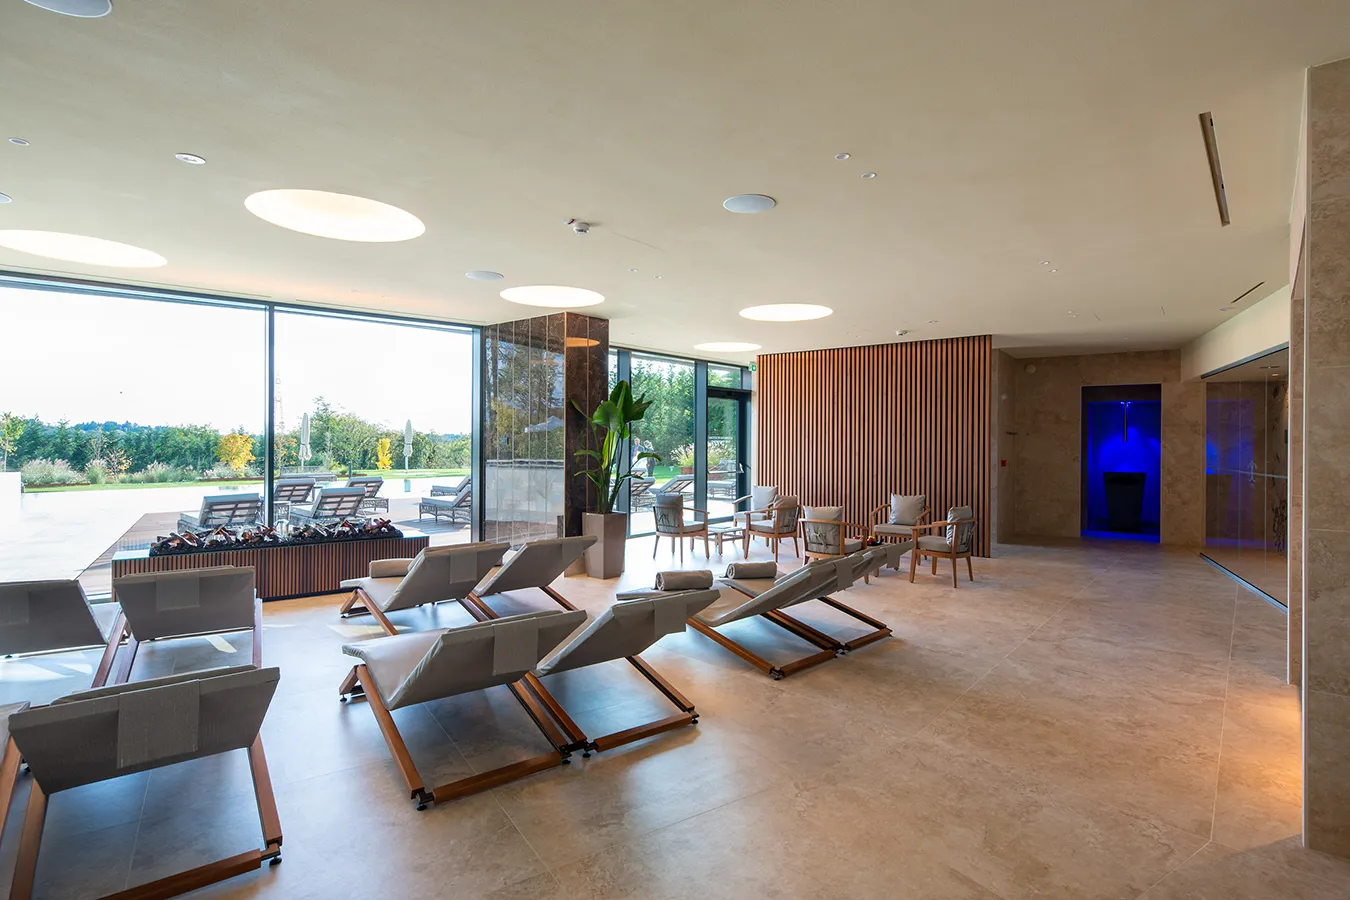 Spazioso salone di una SPA con eleganti piastrelle effetto pietra ed effetto marmo, ampie finestre e comode chaise-longue, per un ambiente rilassante e di design.